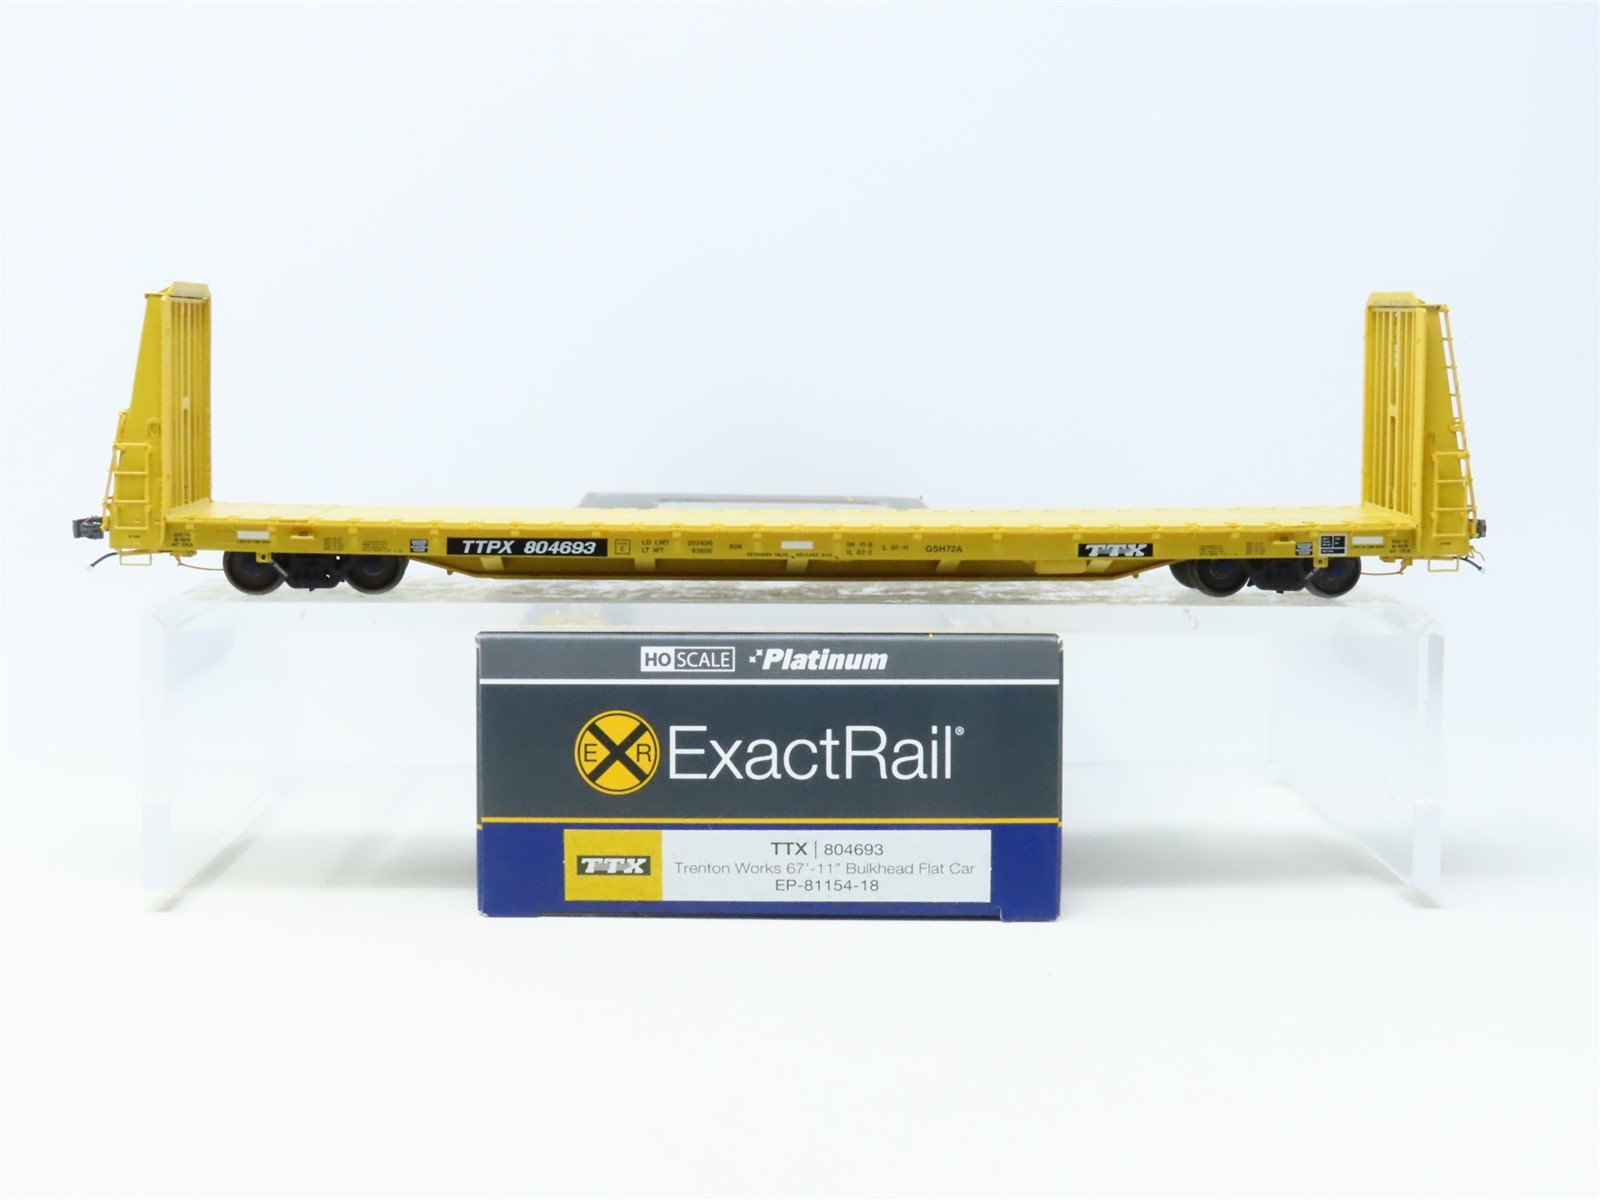 HO ExactRail Platinum #EP- 81154-18 TTPX TTX Trenton Works Bulkhead Flat Car